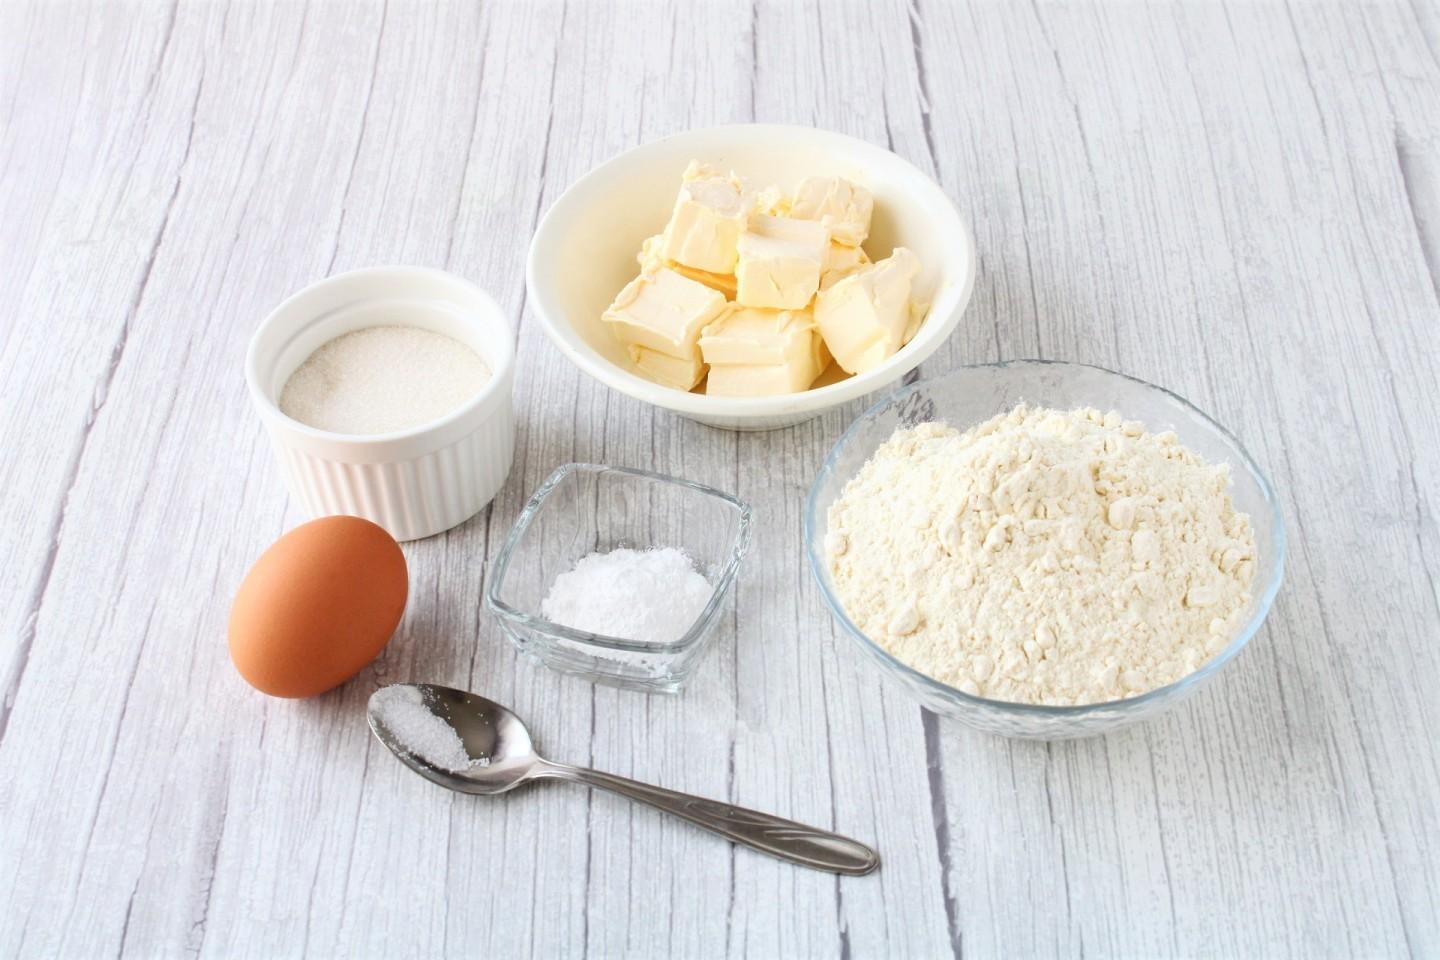 Сметана яйца мука сахар сливочное масло. Ингредиенты для песочного теста. Ингредиенты для песочного пирога. Творог с сахаром. Мука сахар ванилин.